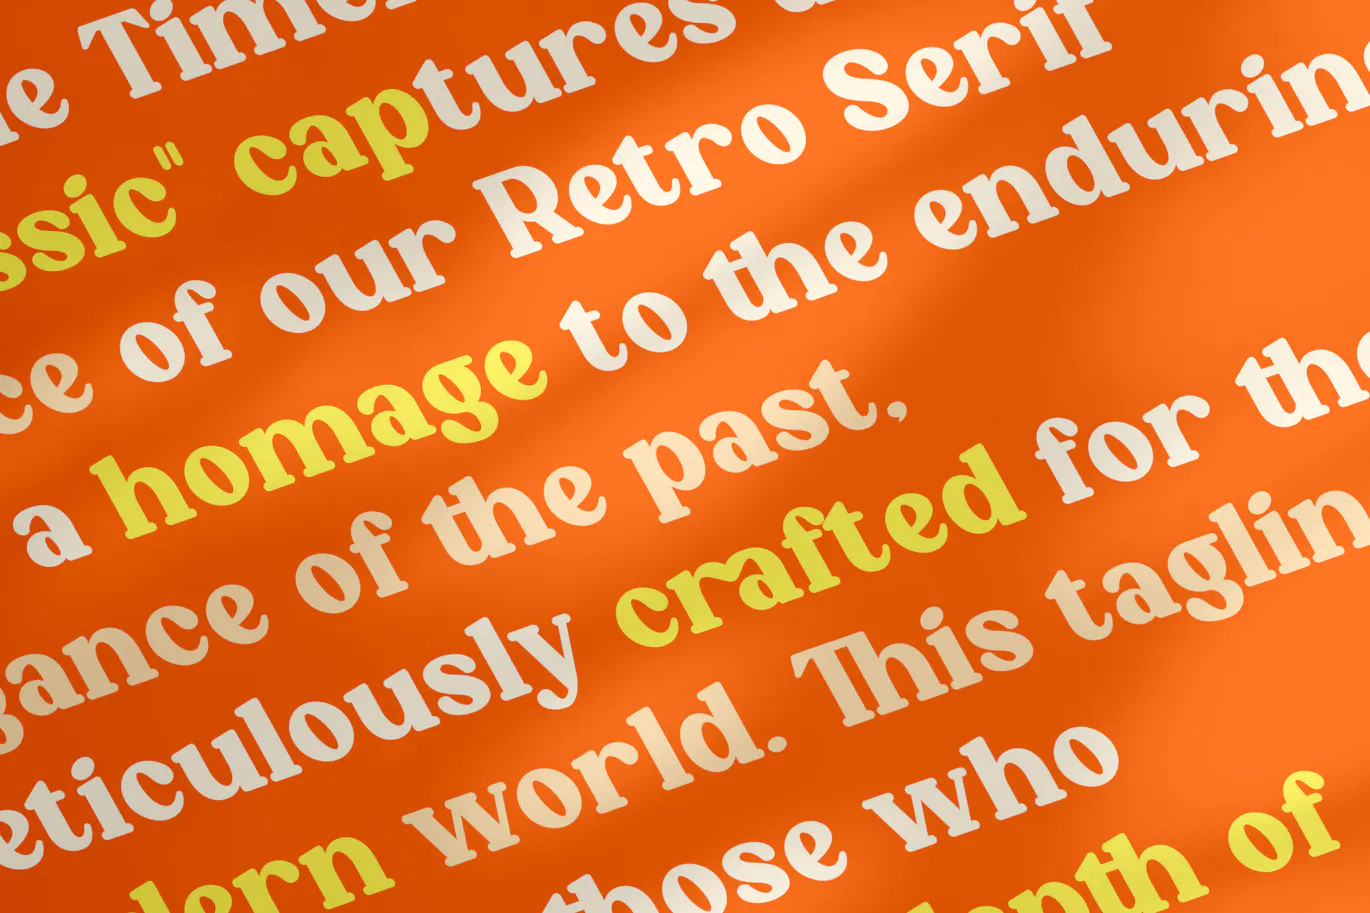 复古风格的英文粗体衬线字体 - Roffene - Retro Serif Style Font 设计字体 第8张